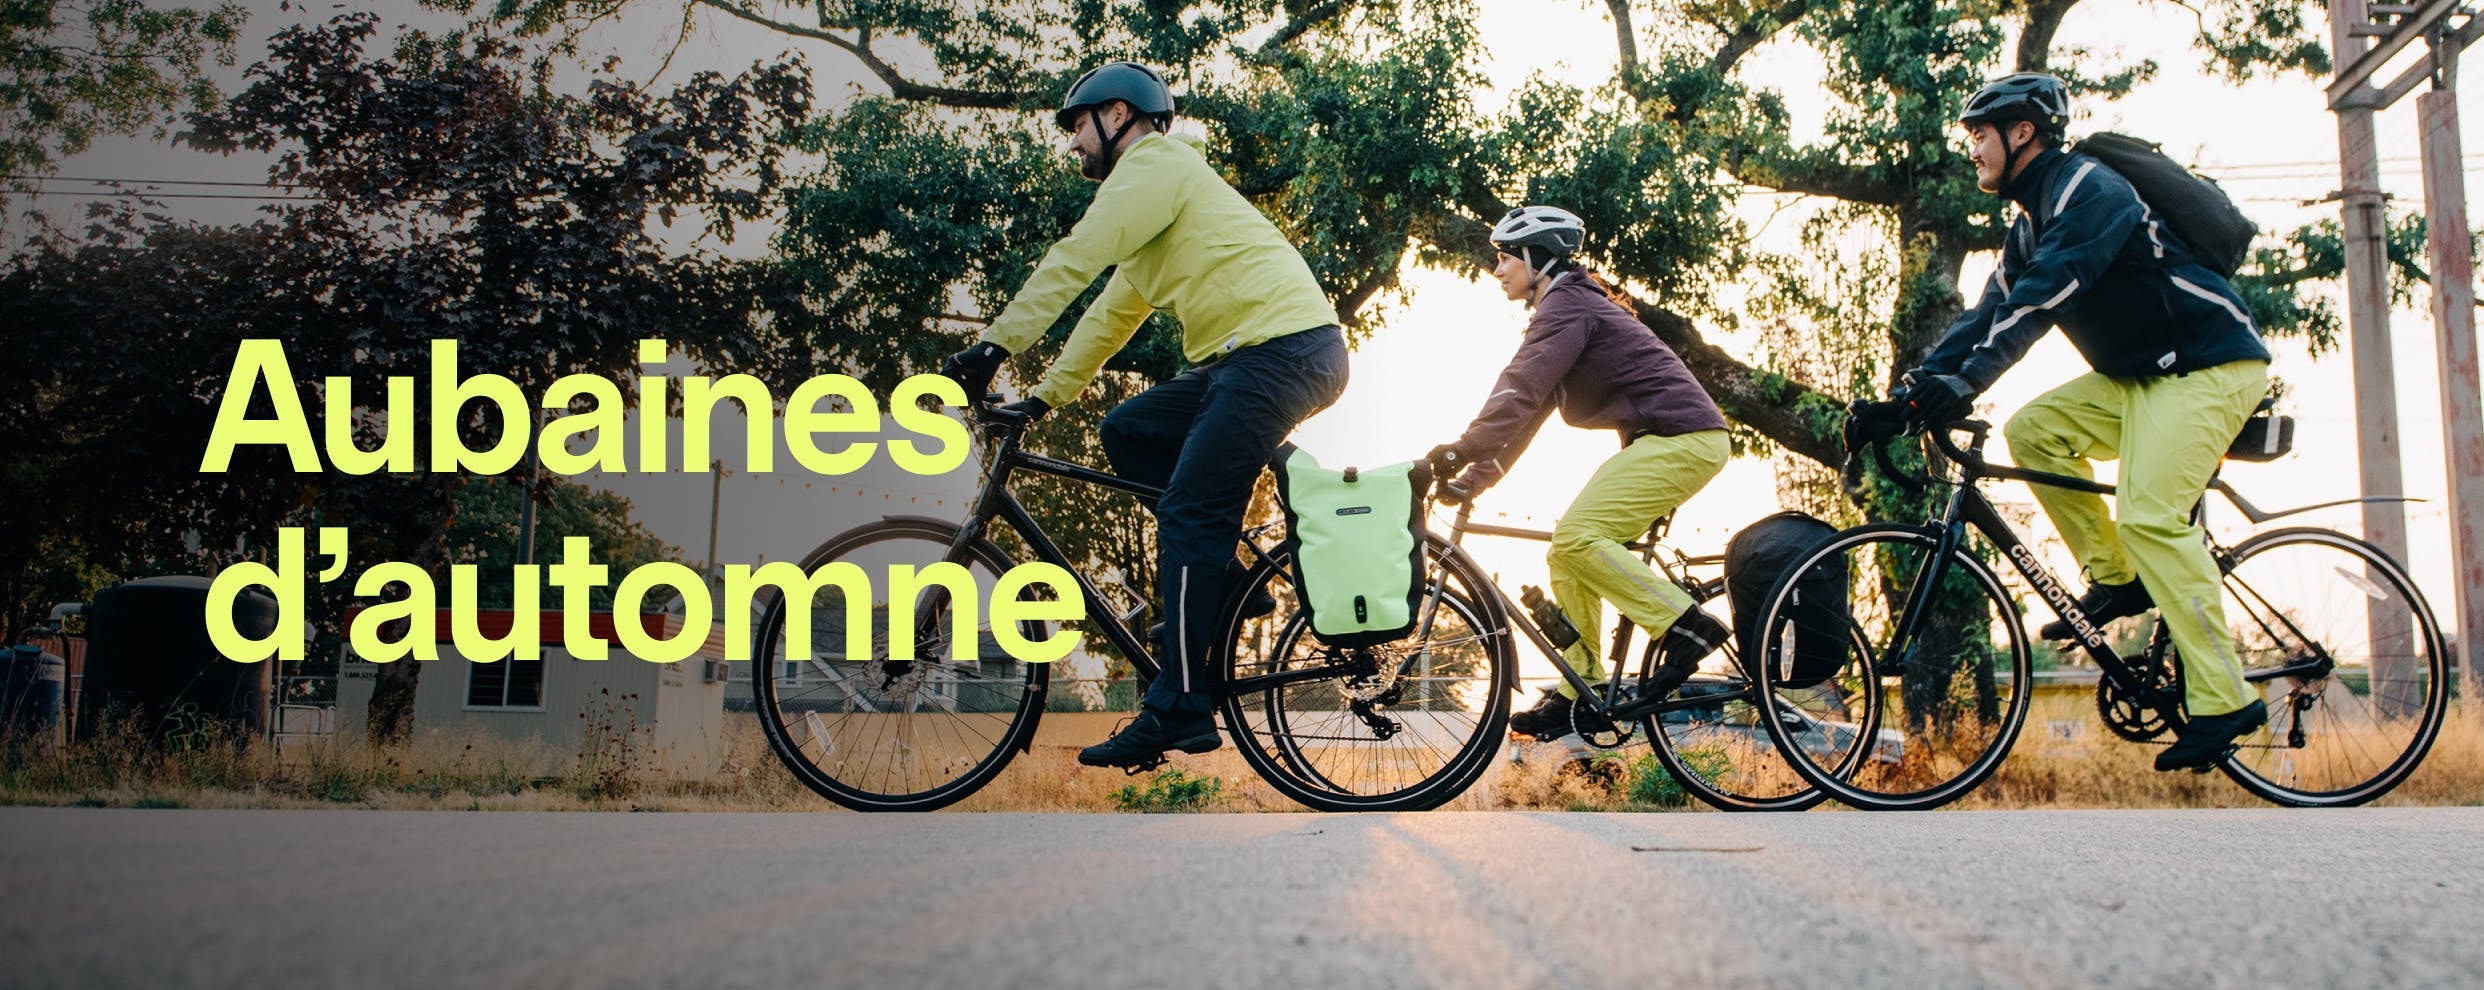 25 % de rabais sur le matériel de vélo de MEC. Bonifiez votre monture ou créez votre propre atelier de vélo. Sur les styles sélectionnés, jusqu’au 4 octobre.